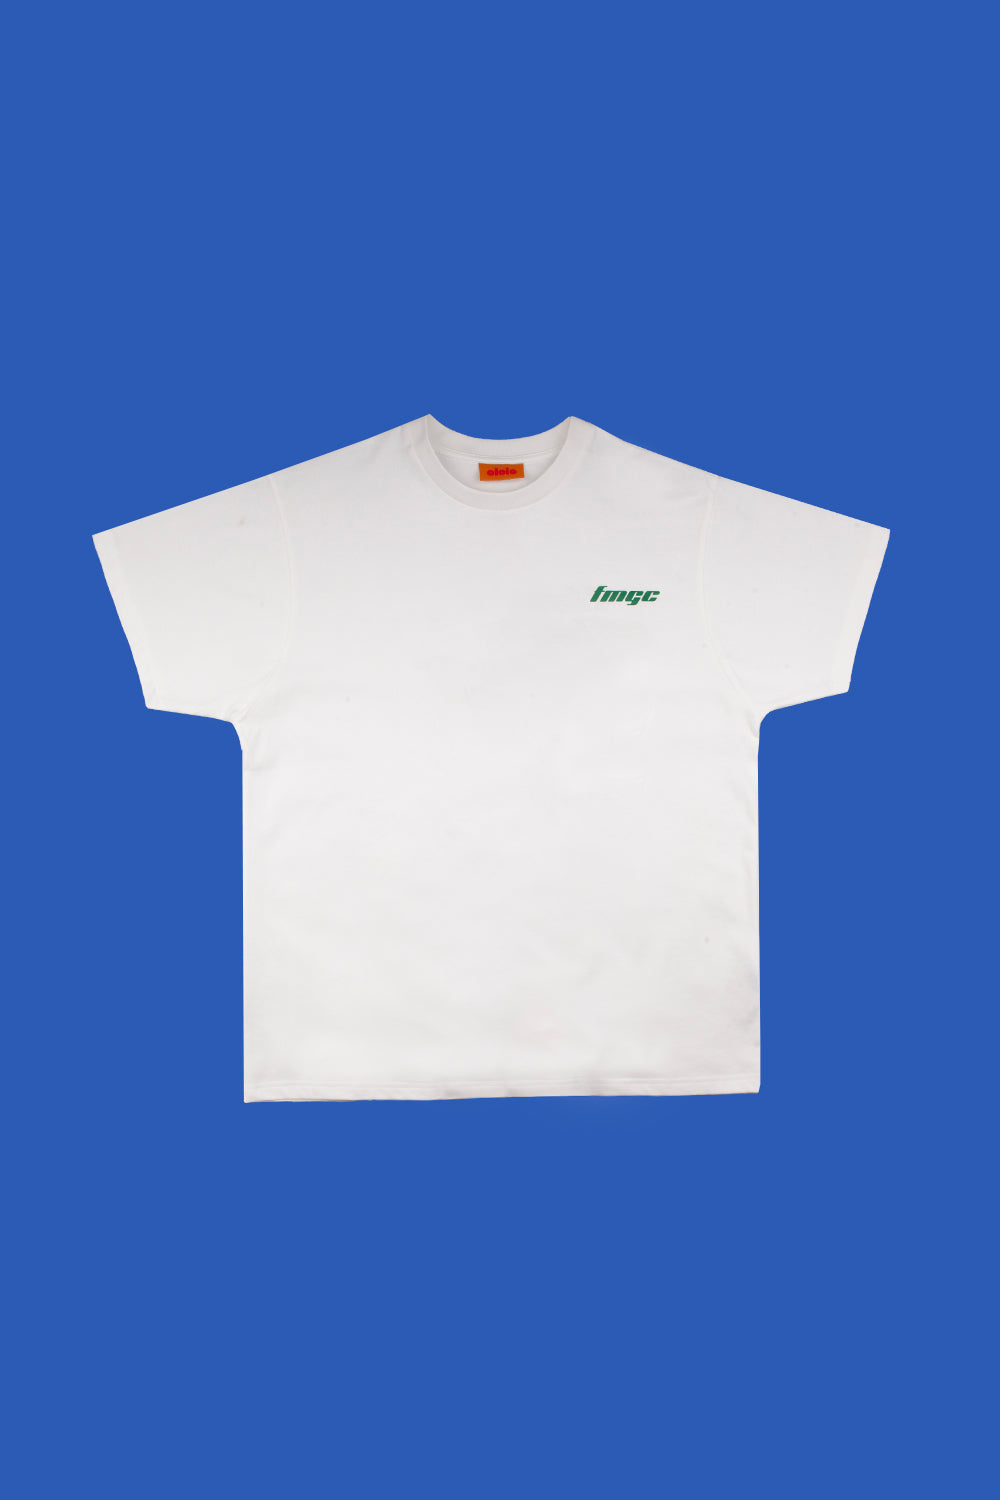 FMGC T-Shirt